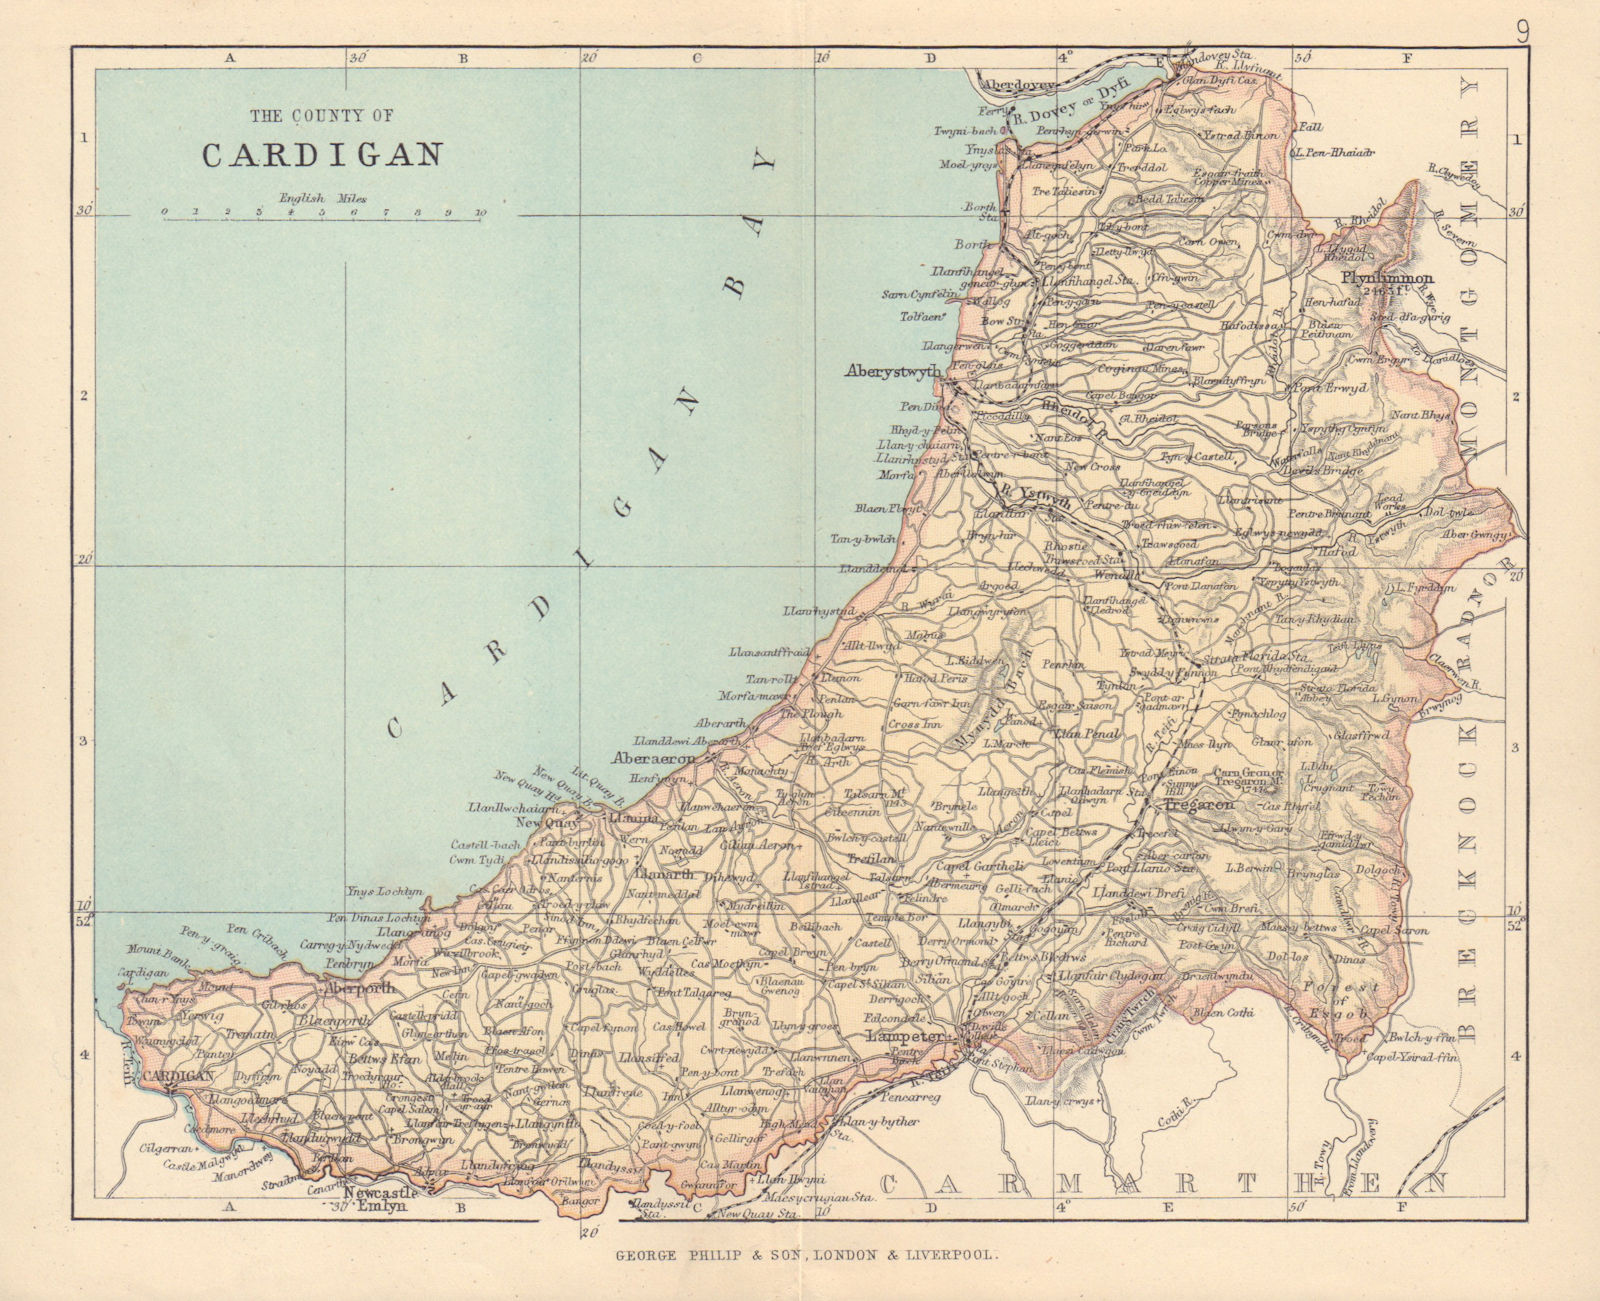 CARDIGANSHIRE "The County of Cardigan" Aberystwyth Wales BARTHOLOMEW 1890 map